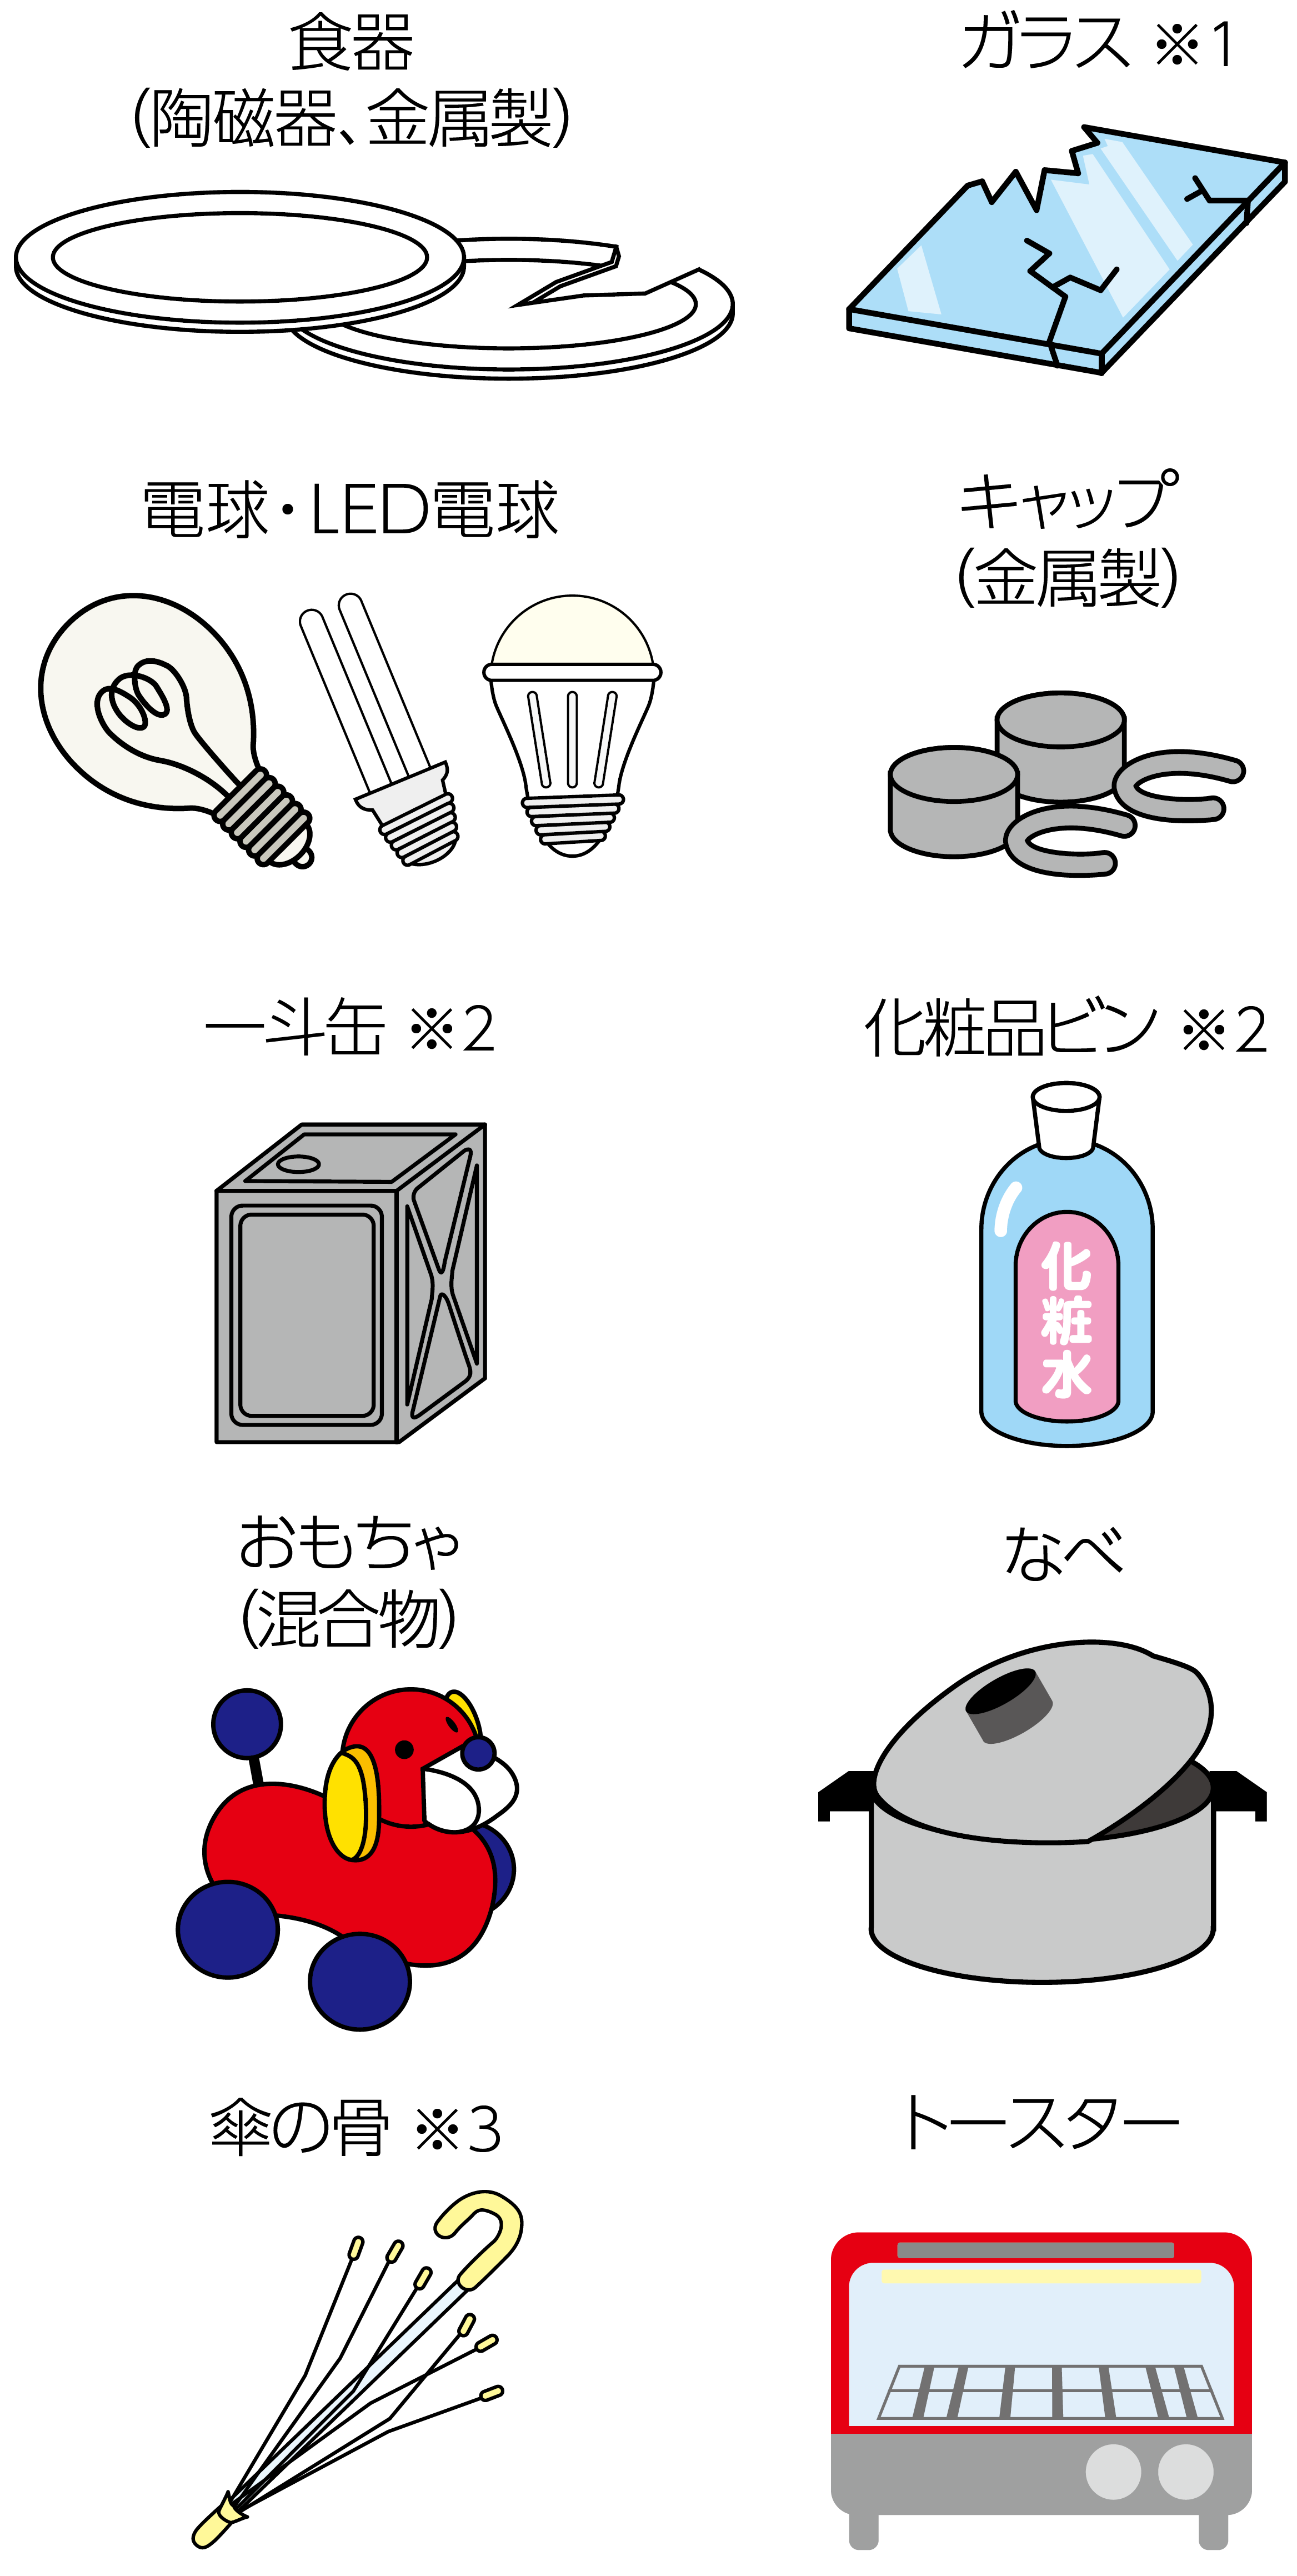 食器（陶磁器、金属製）、ガラス、電球・LED電球、キャップ（金属製）、一斗缶、化粧品ビン、おもちゃ（混合物）、なべ、傘の骨、トースター